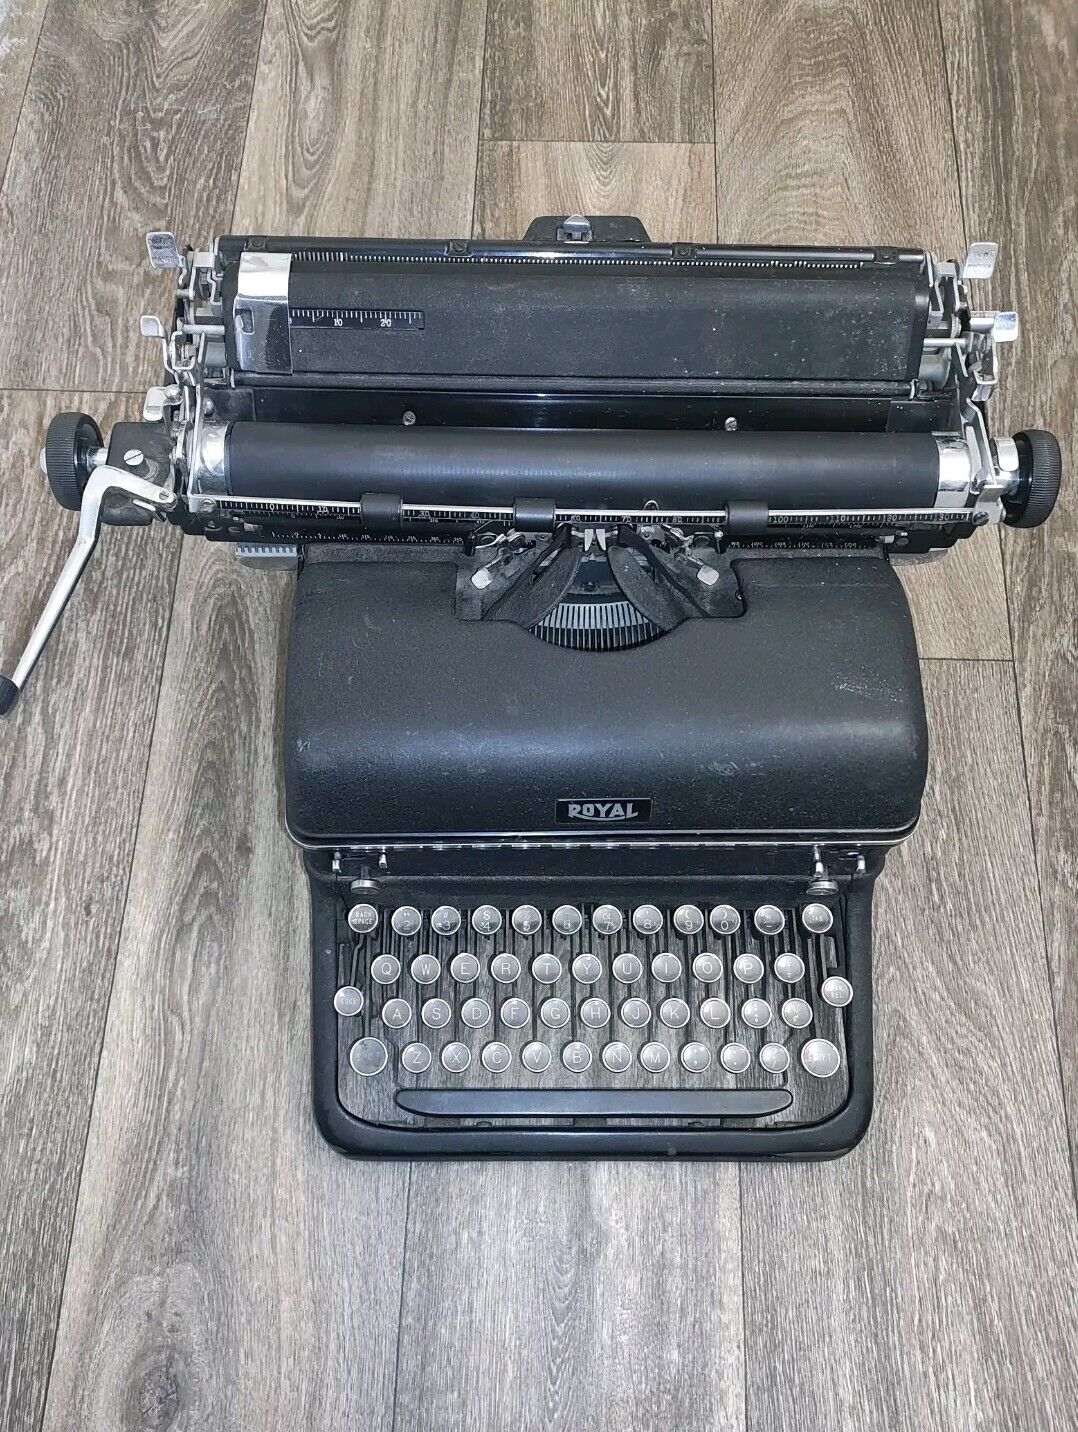 Antique Royal brand typewriter